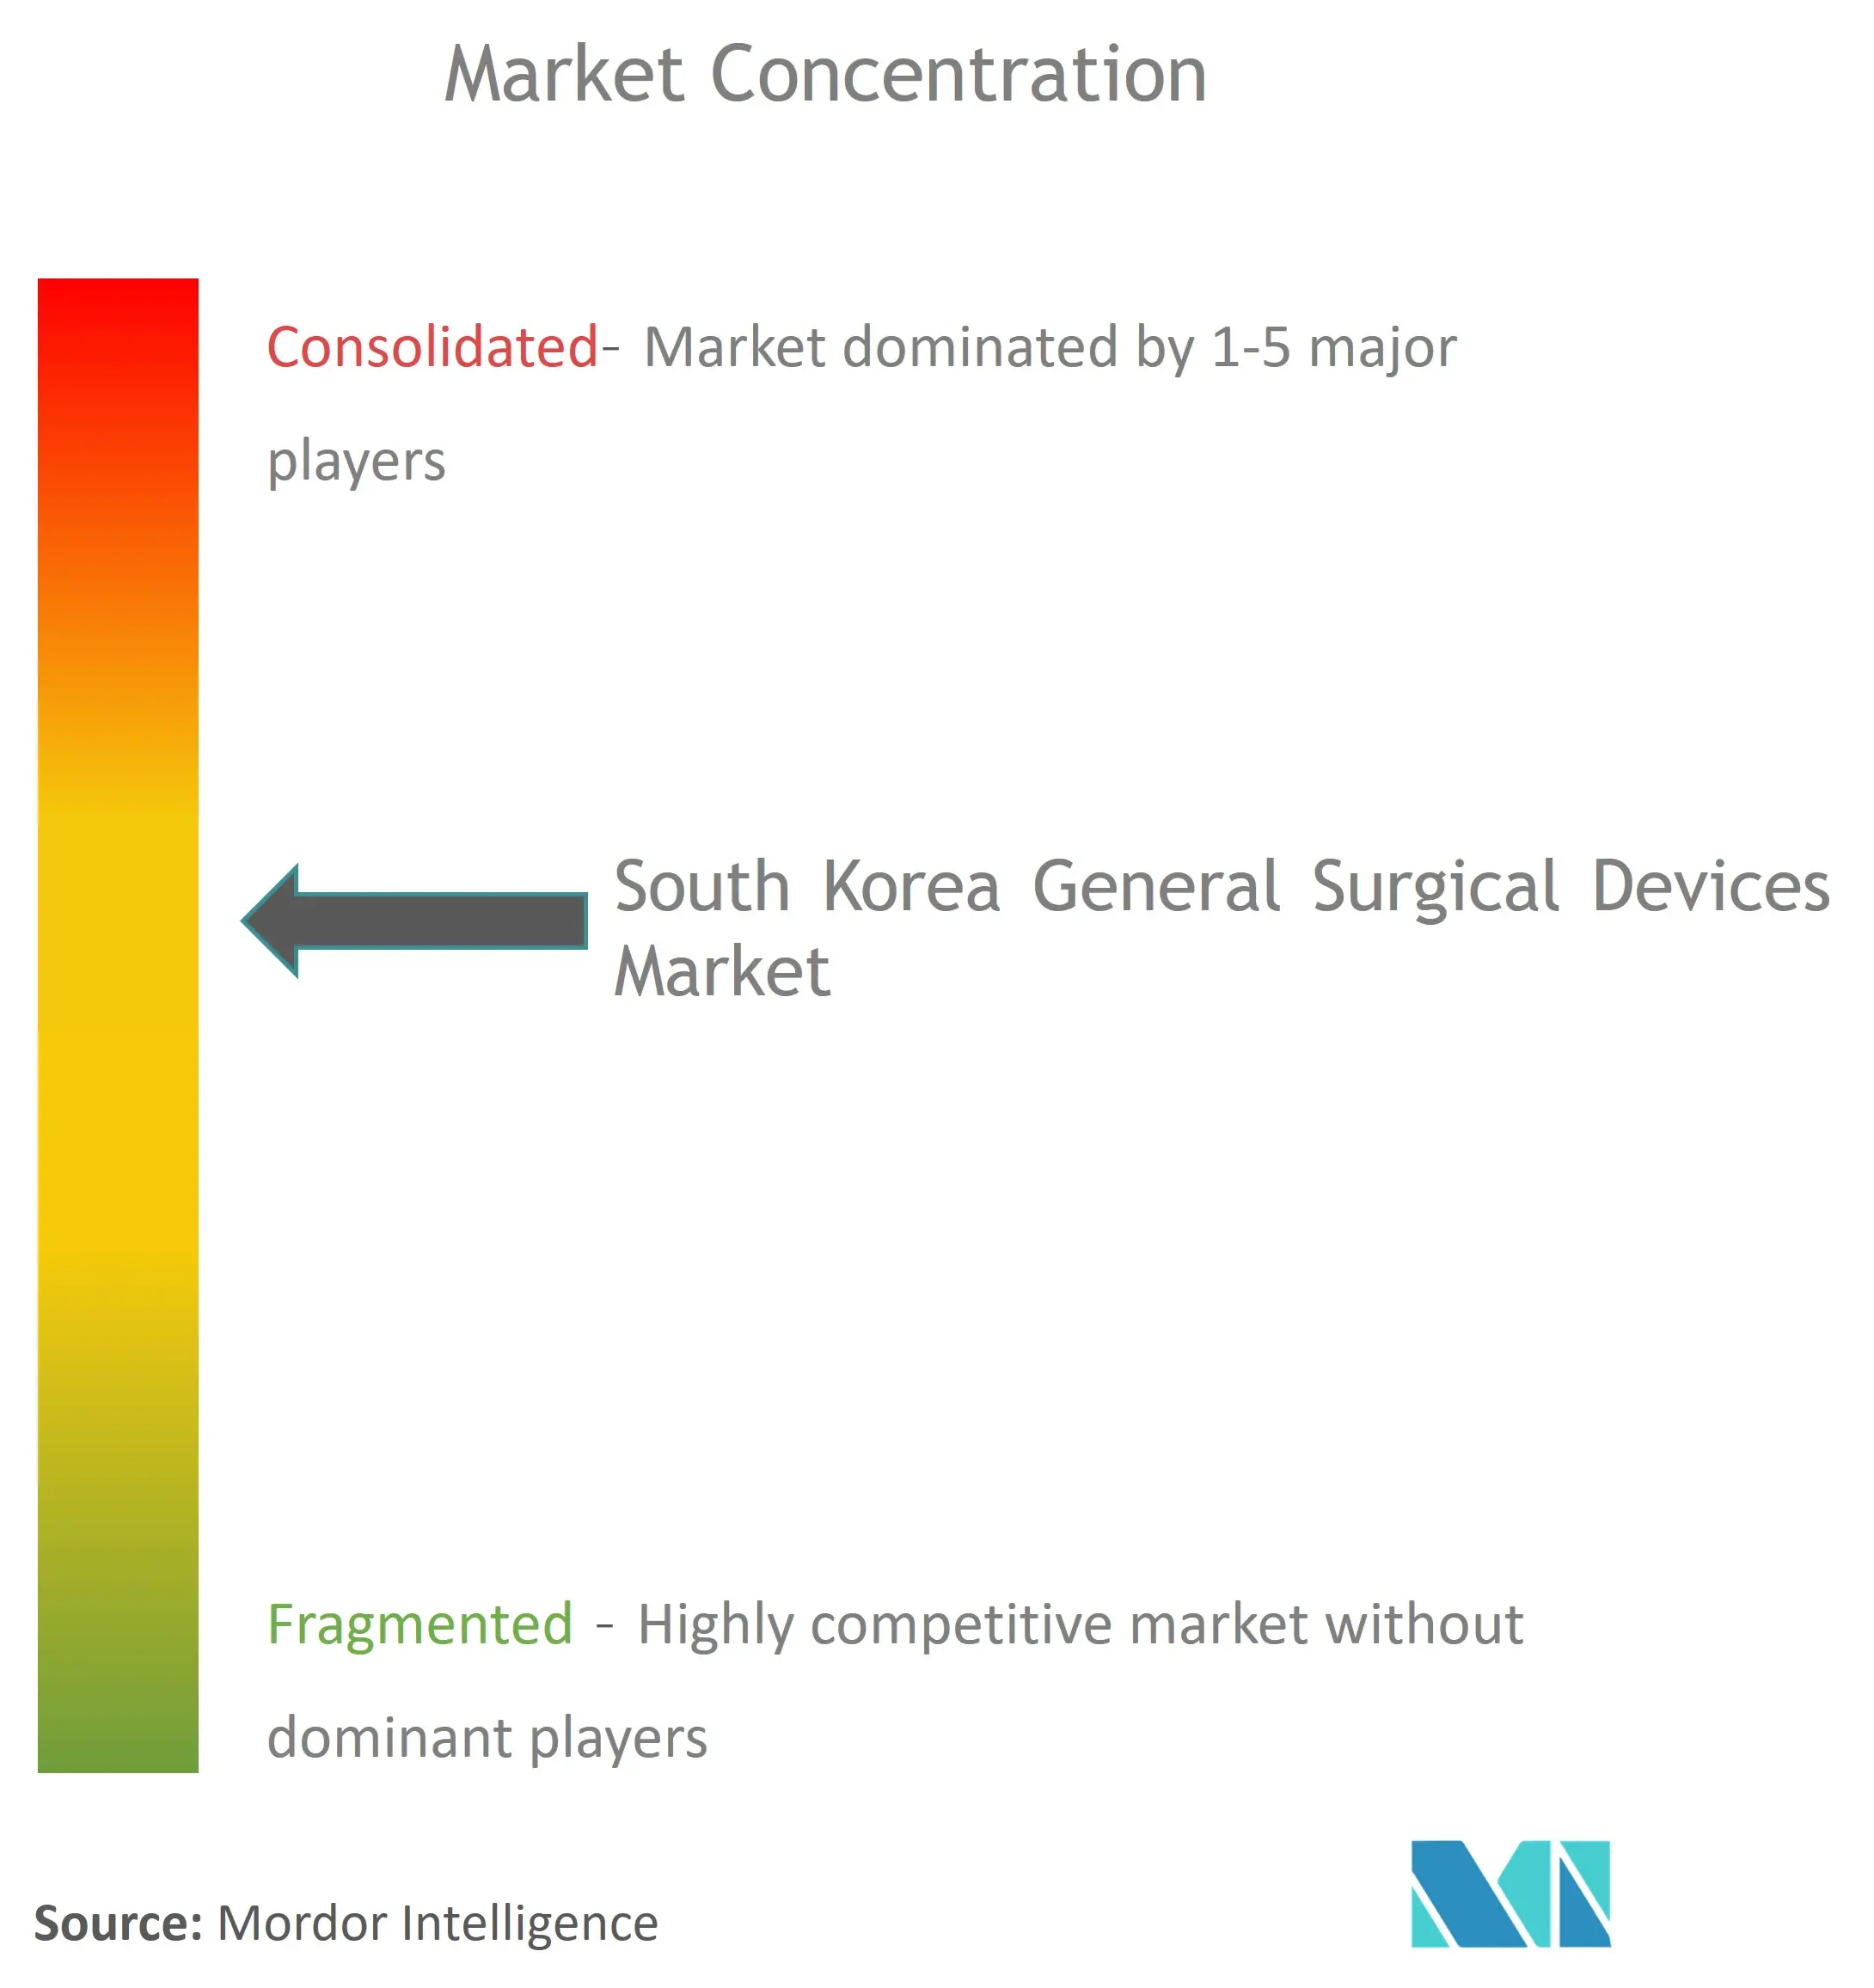 تركيز سوق الأجهزة الجراحية العامة في كوريا الجنوبية.png